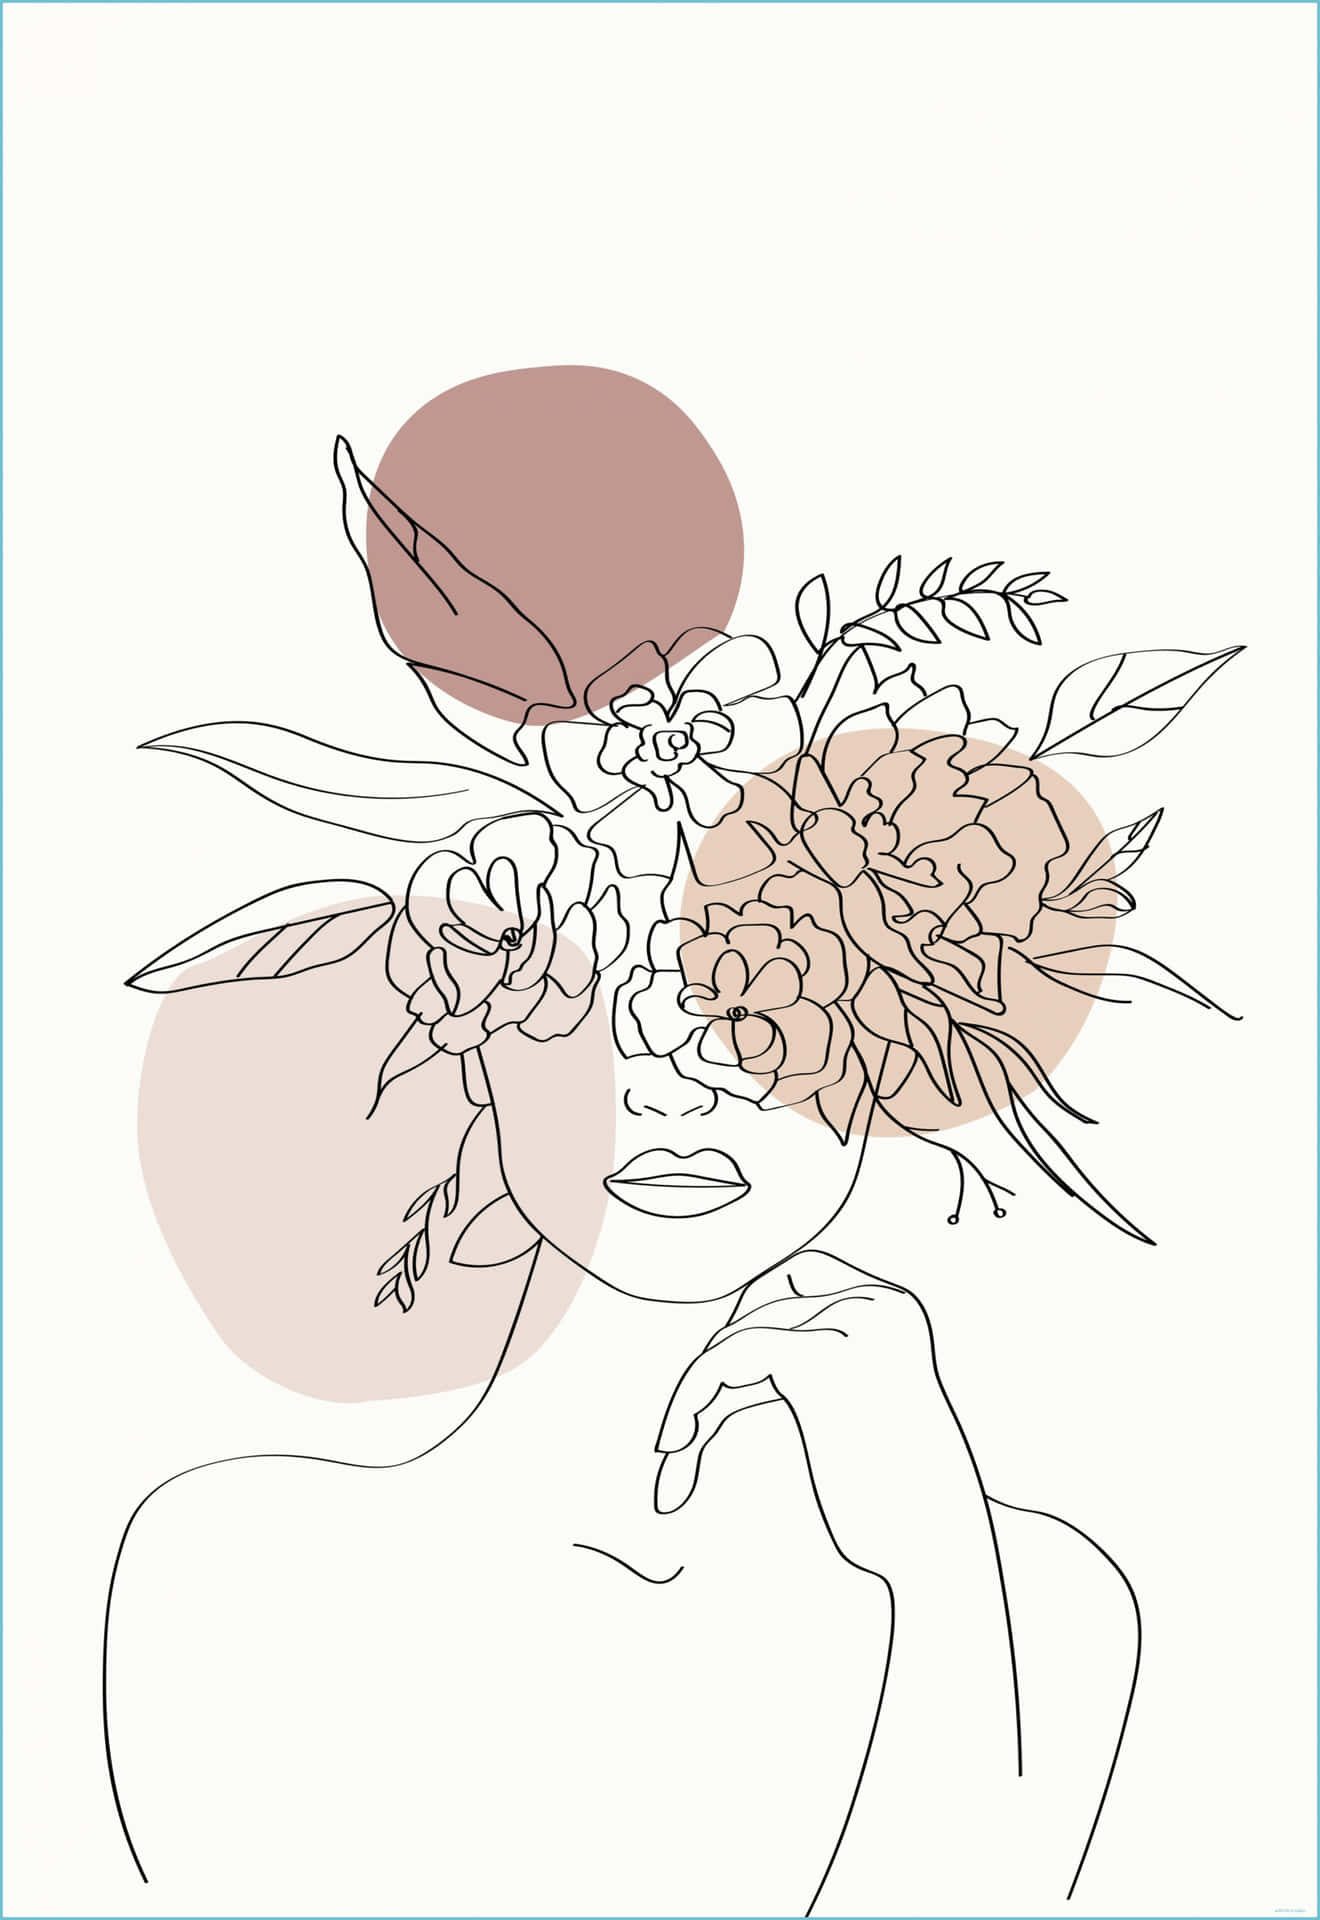 Enkvinna Med Blommor På Huvudet Wallpaper